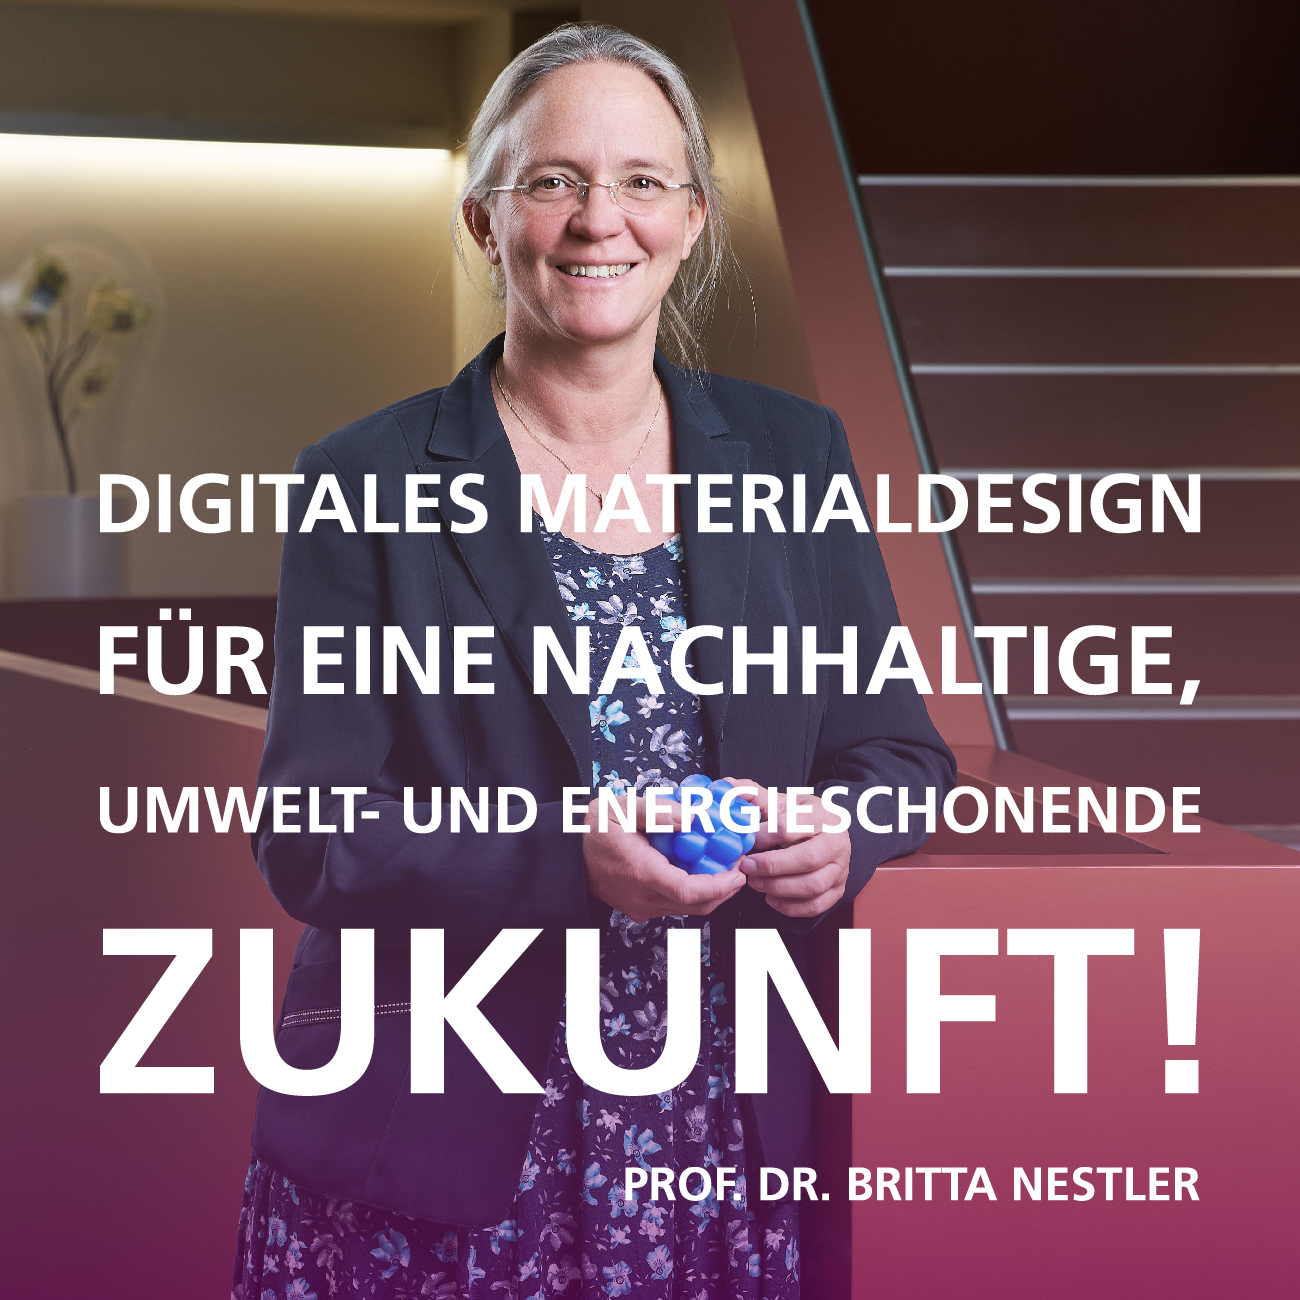 Digitales Materialdesign für eine nachhaltige, umwelt- und energieschonende Zukunft! Zitat von Prof. Dr. Britta Nestler, Bereich 3, KIT